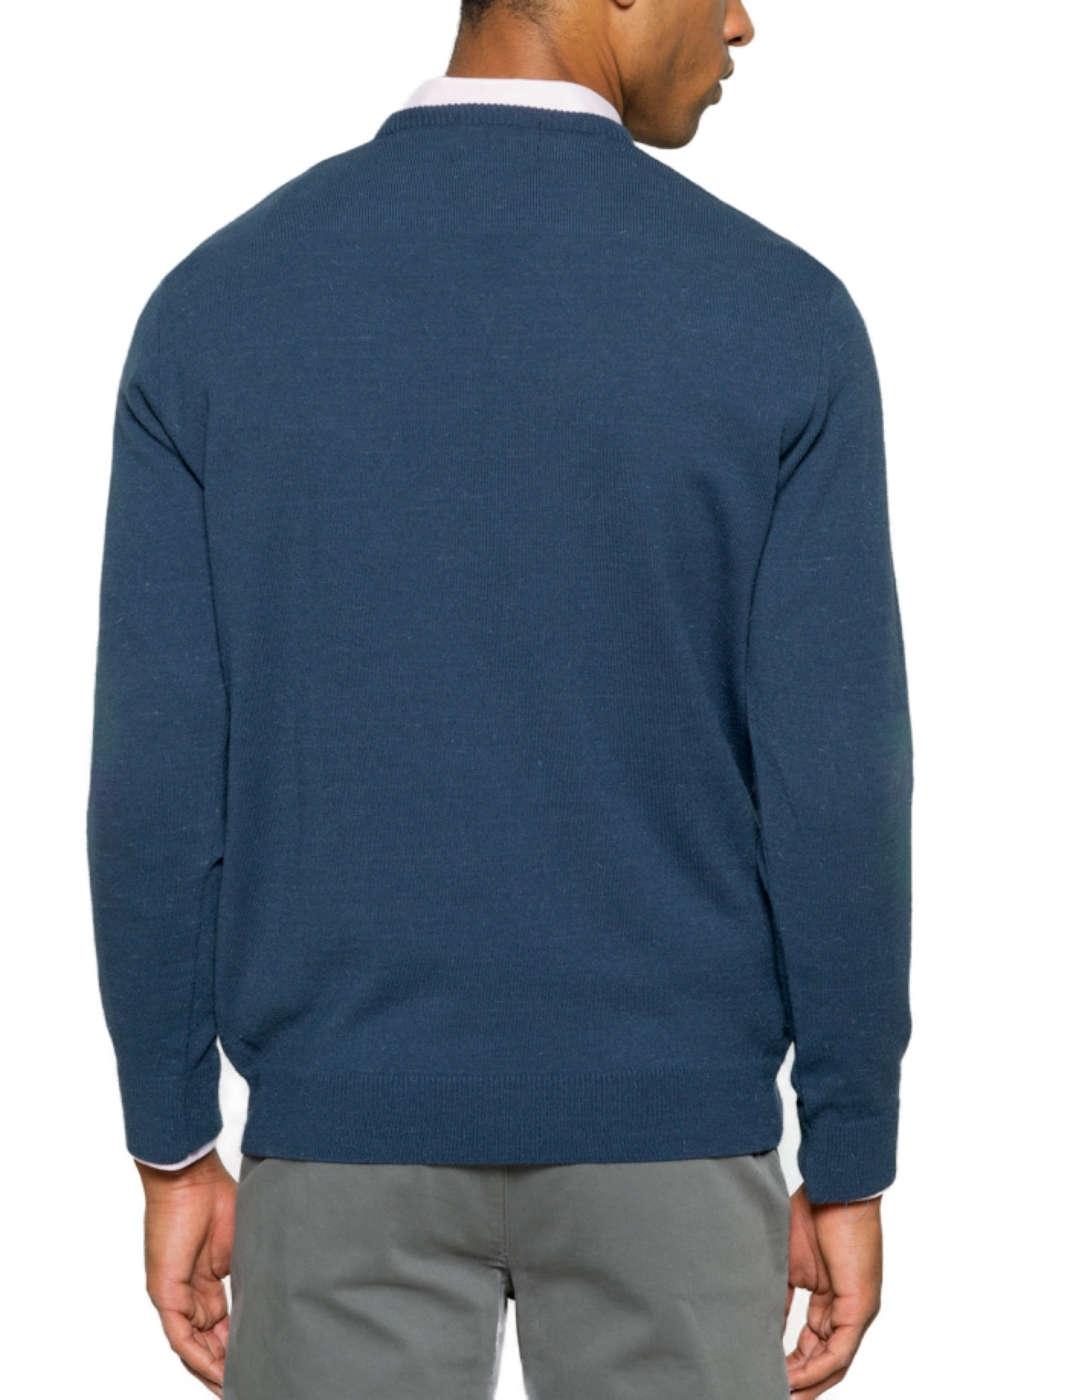 Jersey de hombre, cuello redondo, marca MARVELIS, 95% algodón / 5% ca,  55,95 €